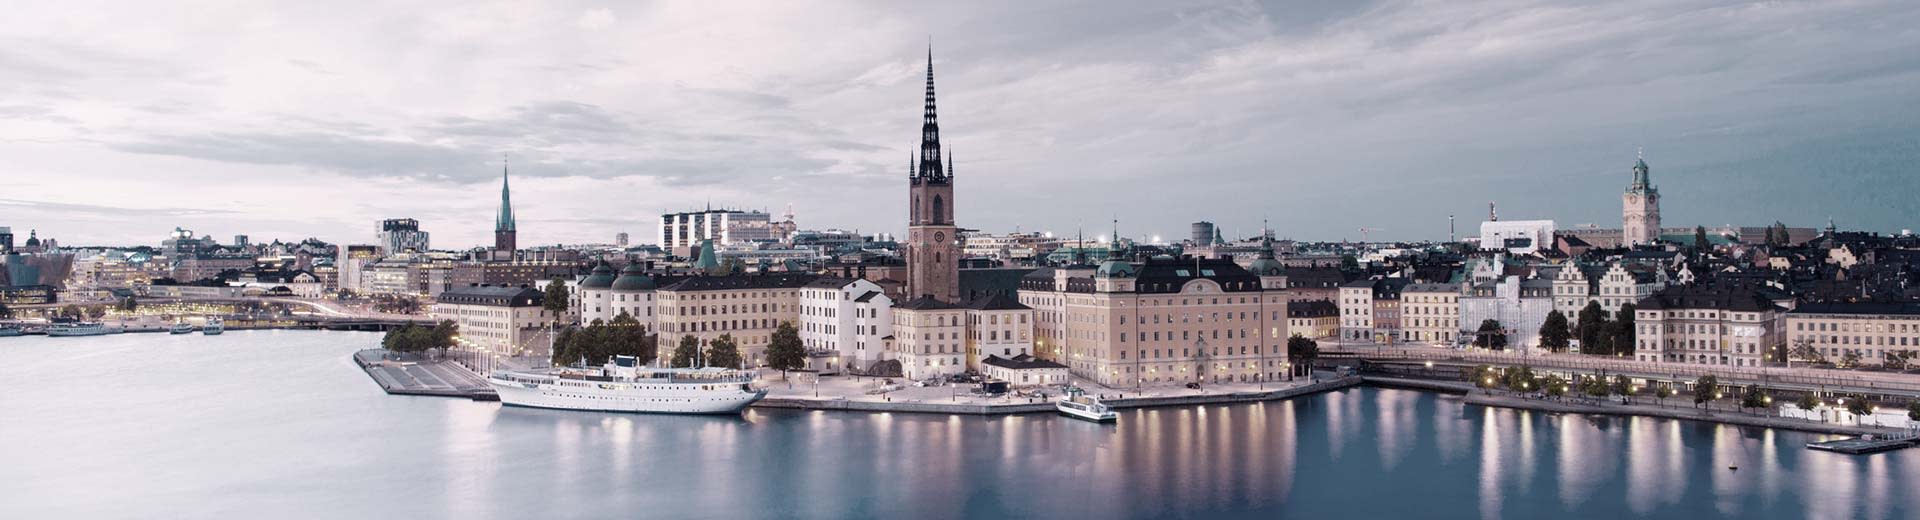 Los edificios históricos se alinean en las orillas de Estocolmo, con cielos grises de alfombras de la iglesia y edificios más modernos.